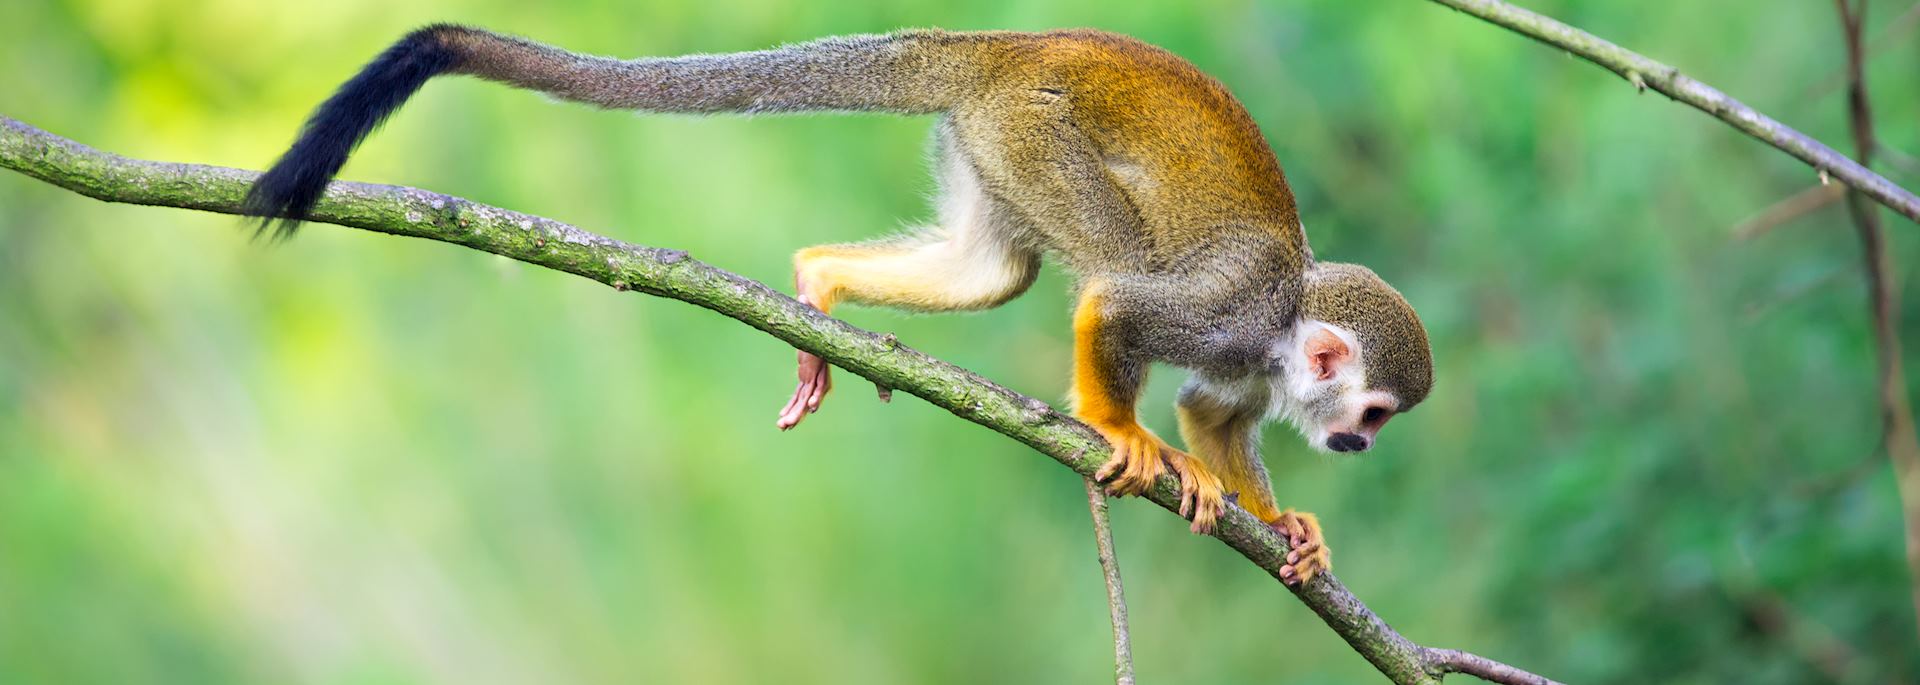 Squirrel monkey in the Amazon Rainforest